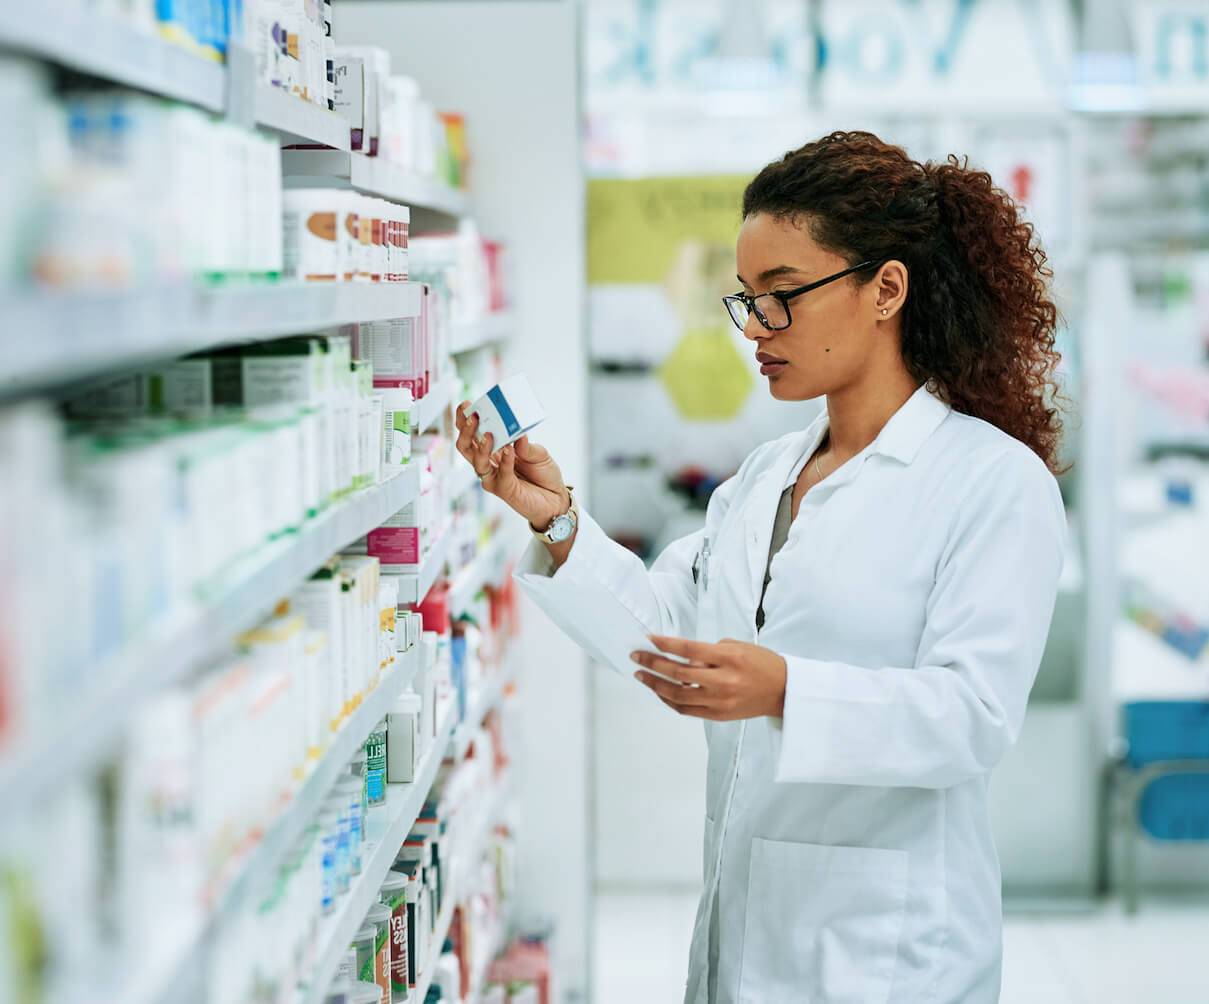 A woman filling a prescription